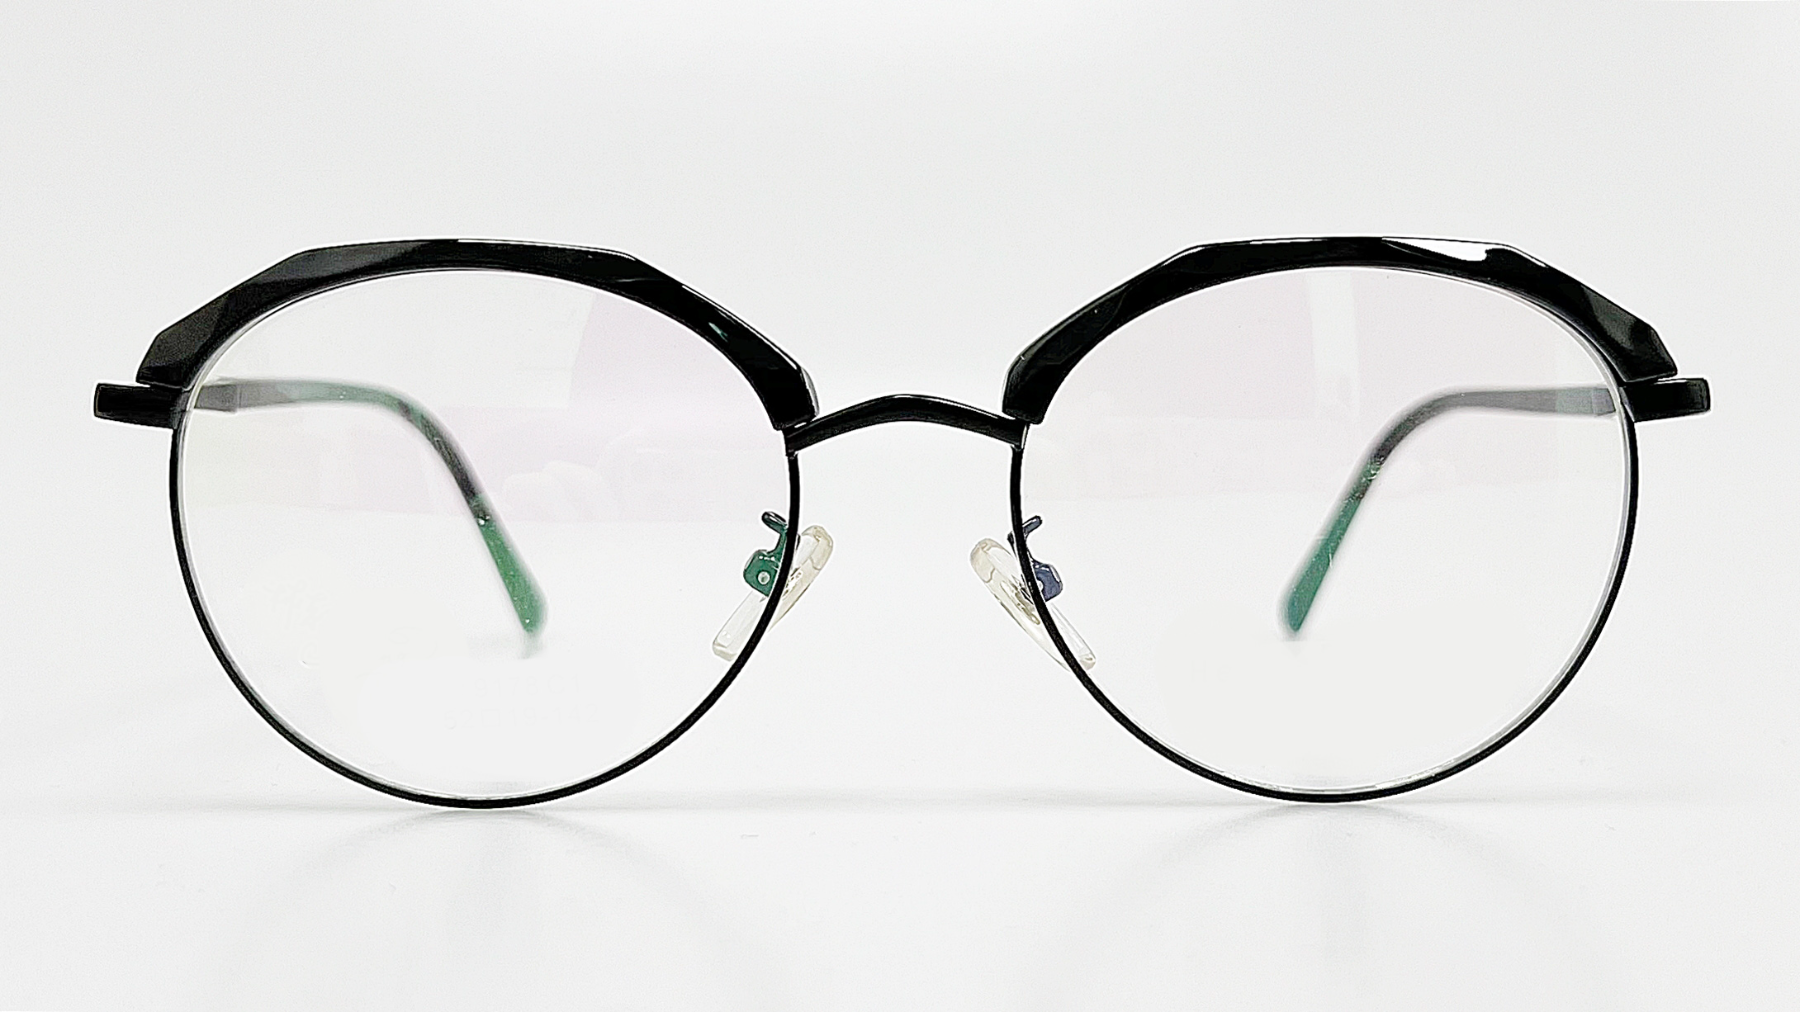 HELLEN KELLER-H9178, Korean glasses, sunglasses, eyeglasses, glasses